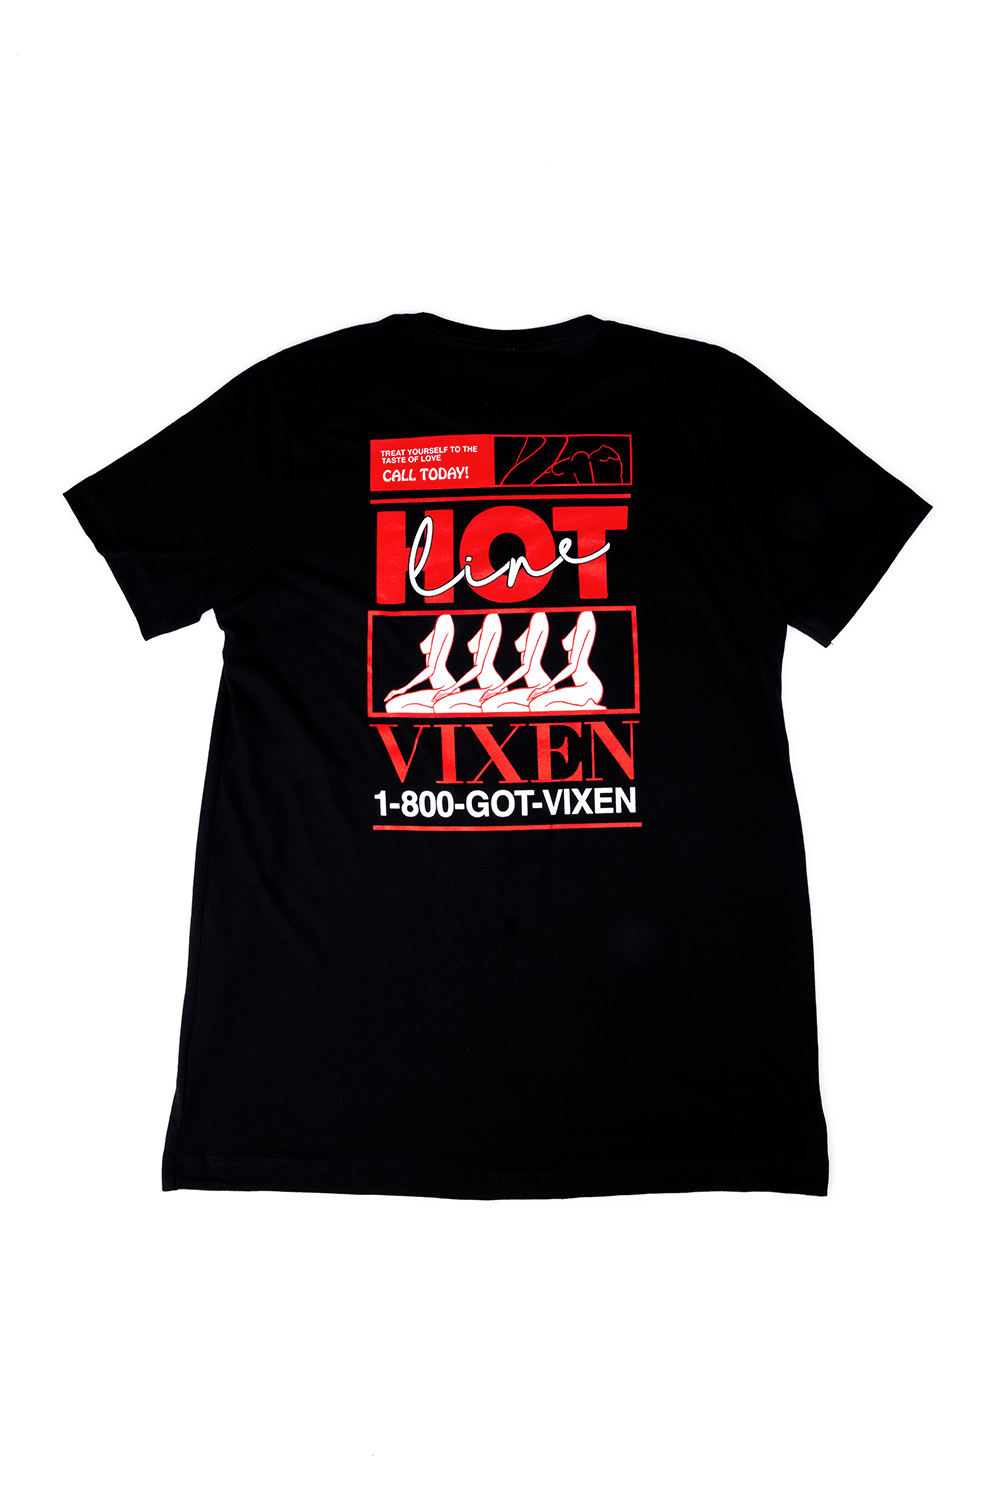 Vixen Hotline T-Shirt